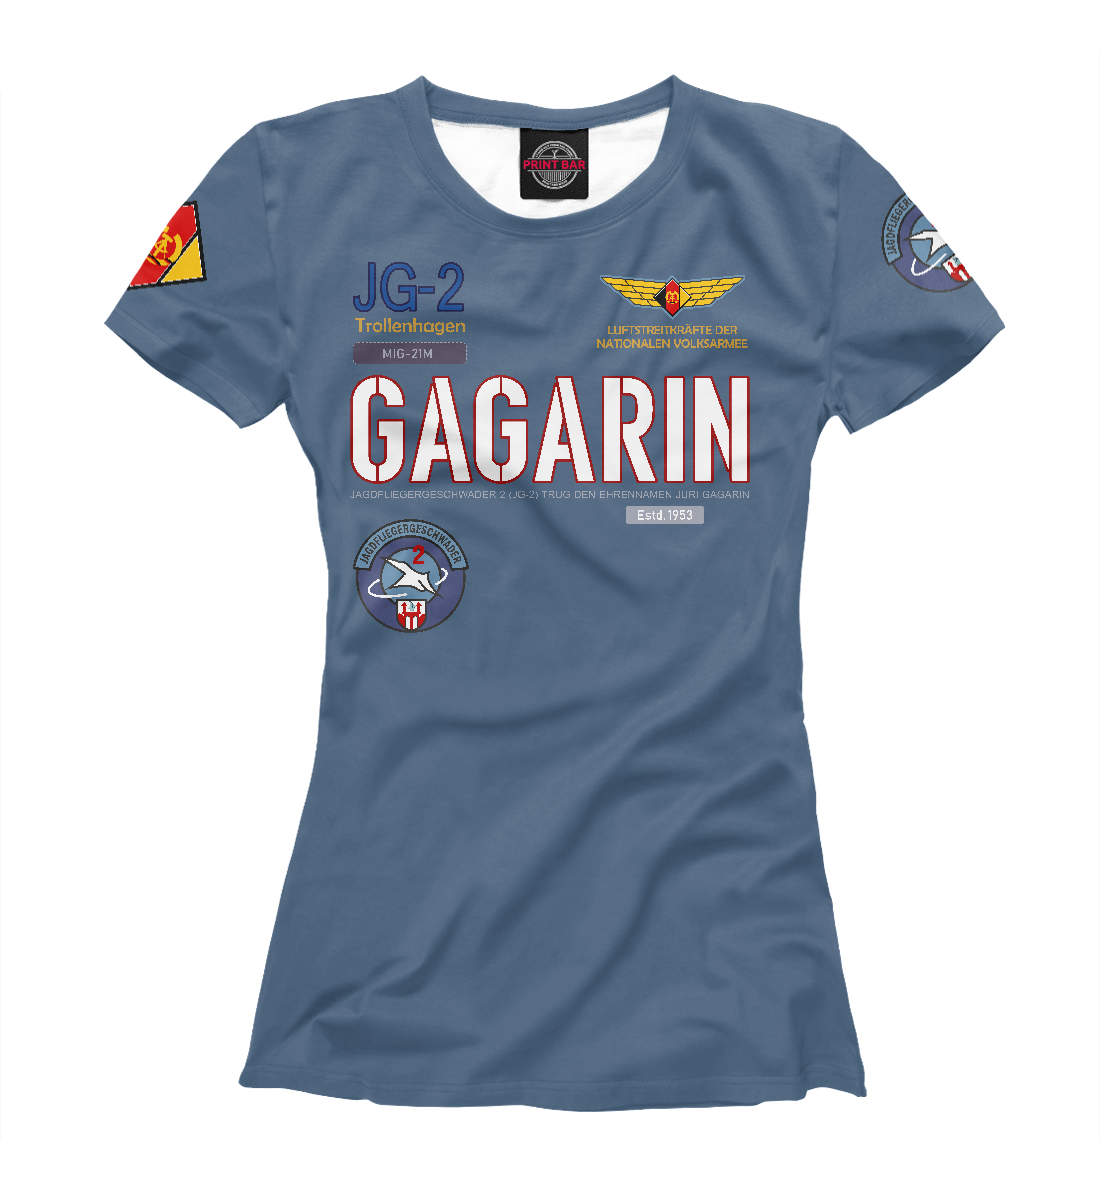 Футболка ВВС ГДР Эскадрилья Гагарин для девочек, артикул: VVS-481647-fut-1mp